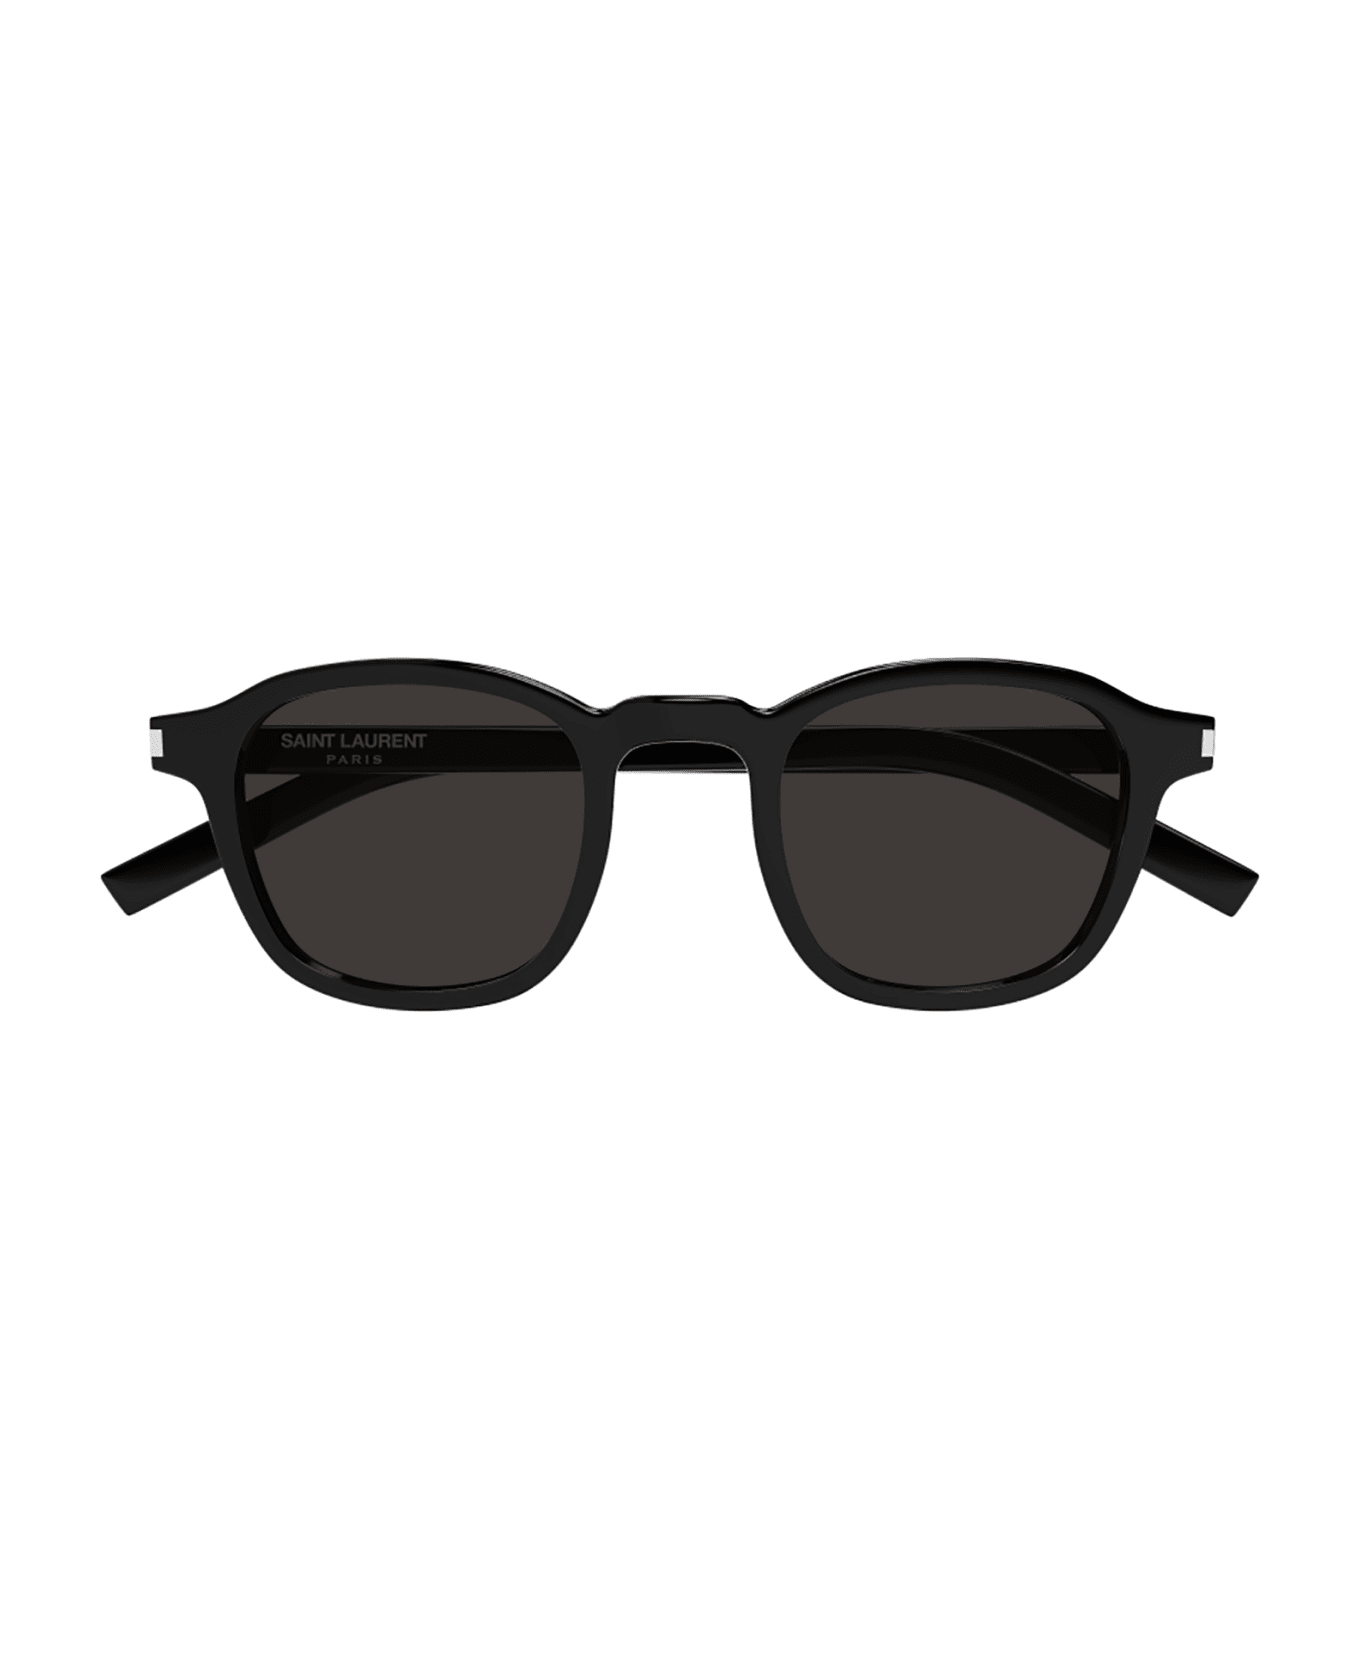 Saint Laurent Eyewear 1e5n4id0a - s CC comb-shaped favourites sunglasses